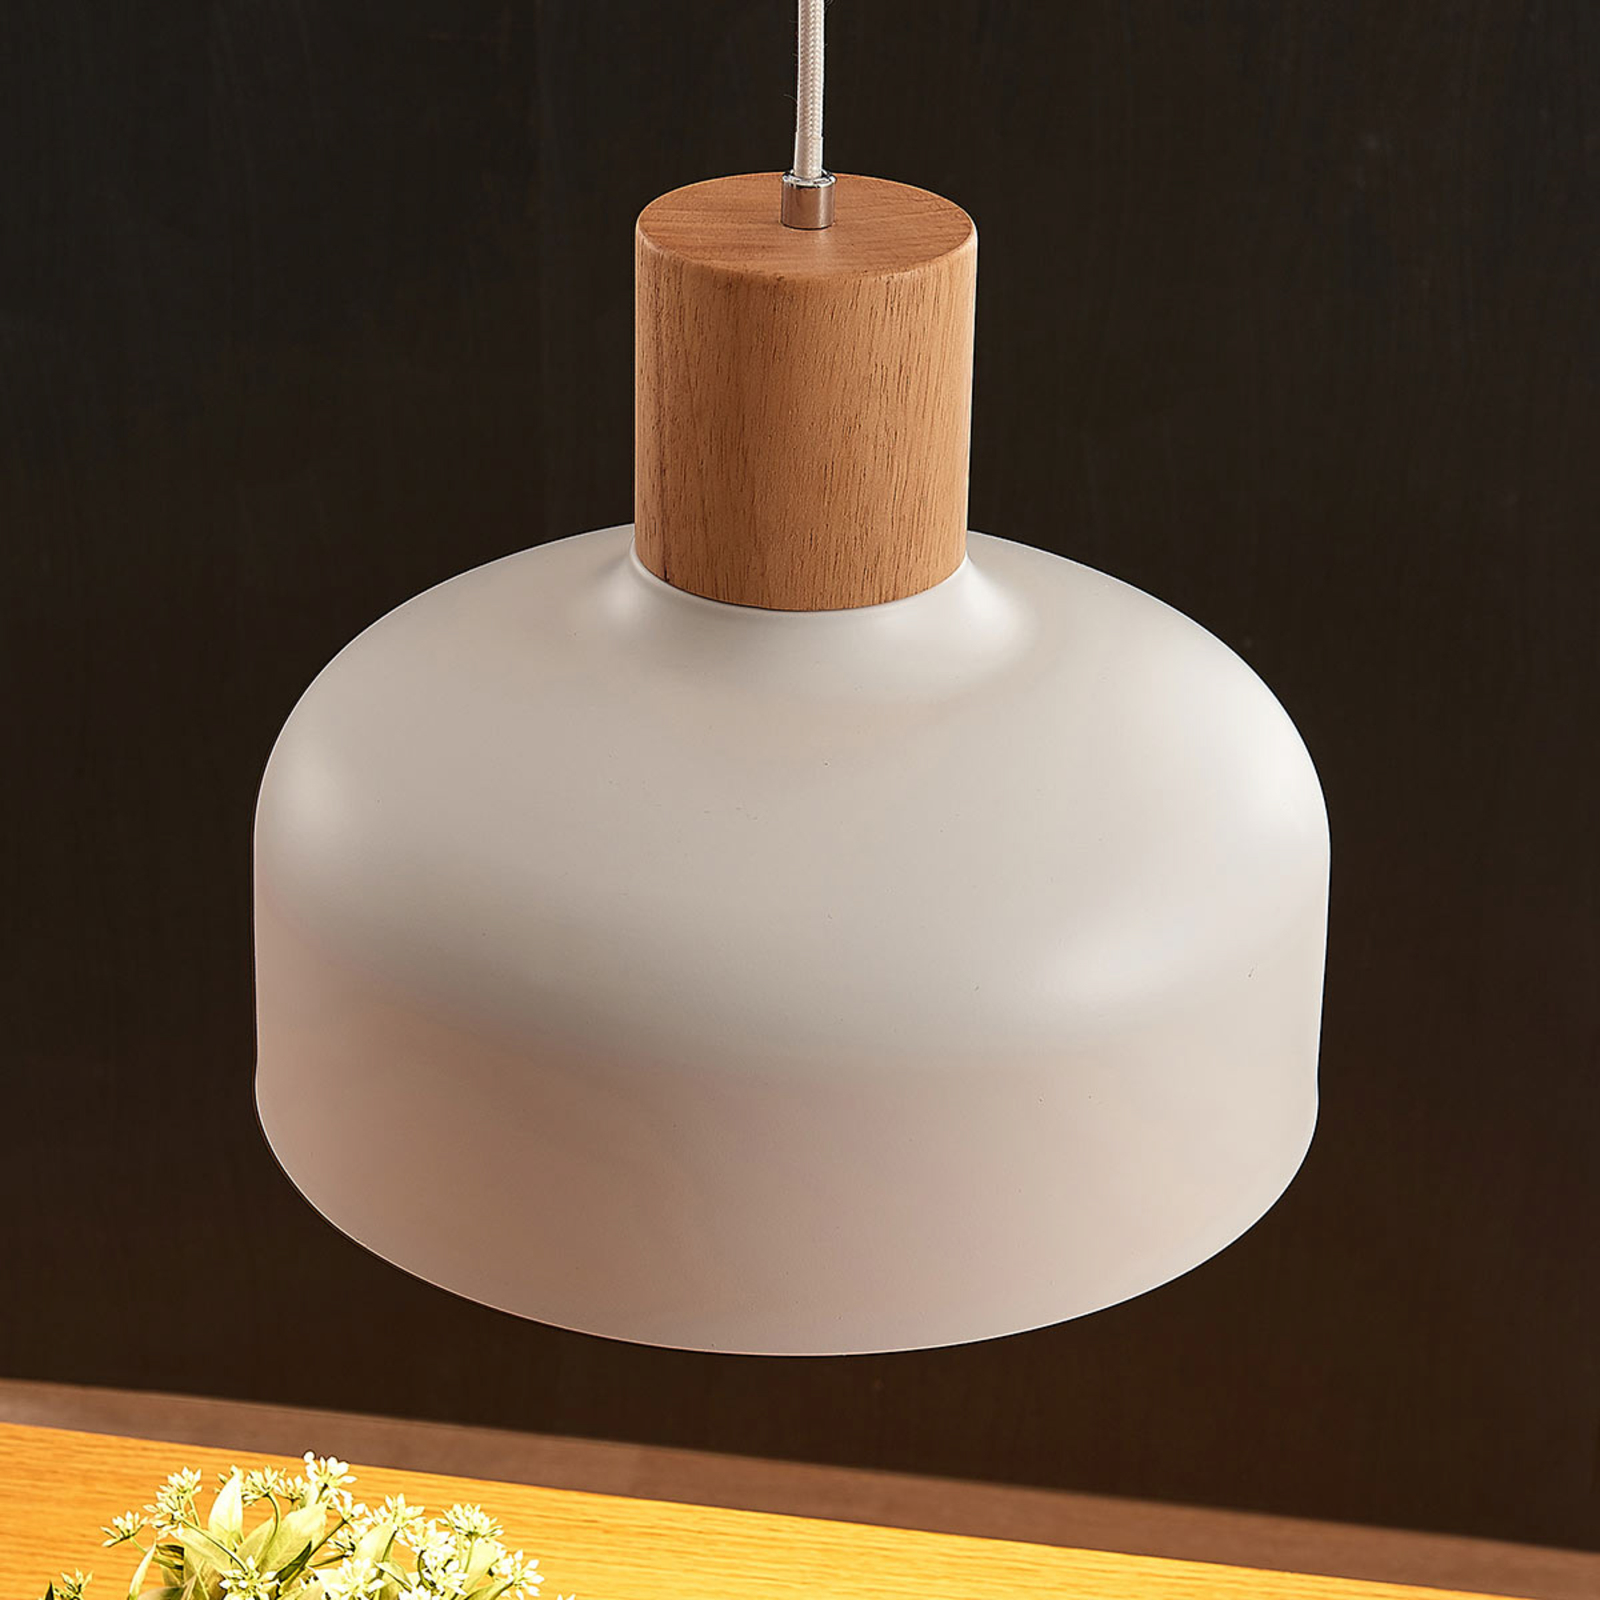 Hanglamp Carlise met houten element